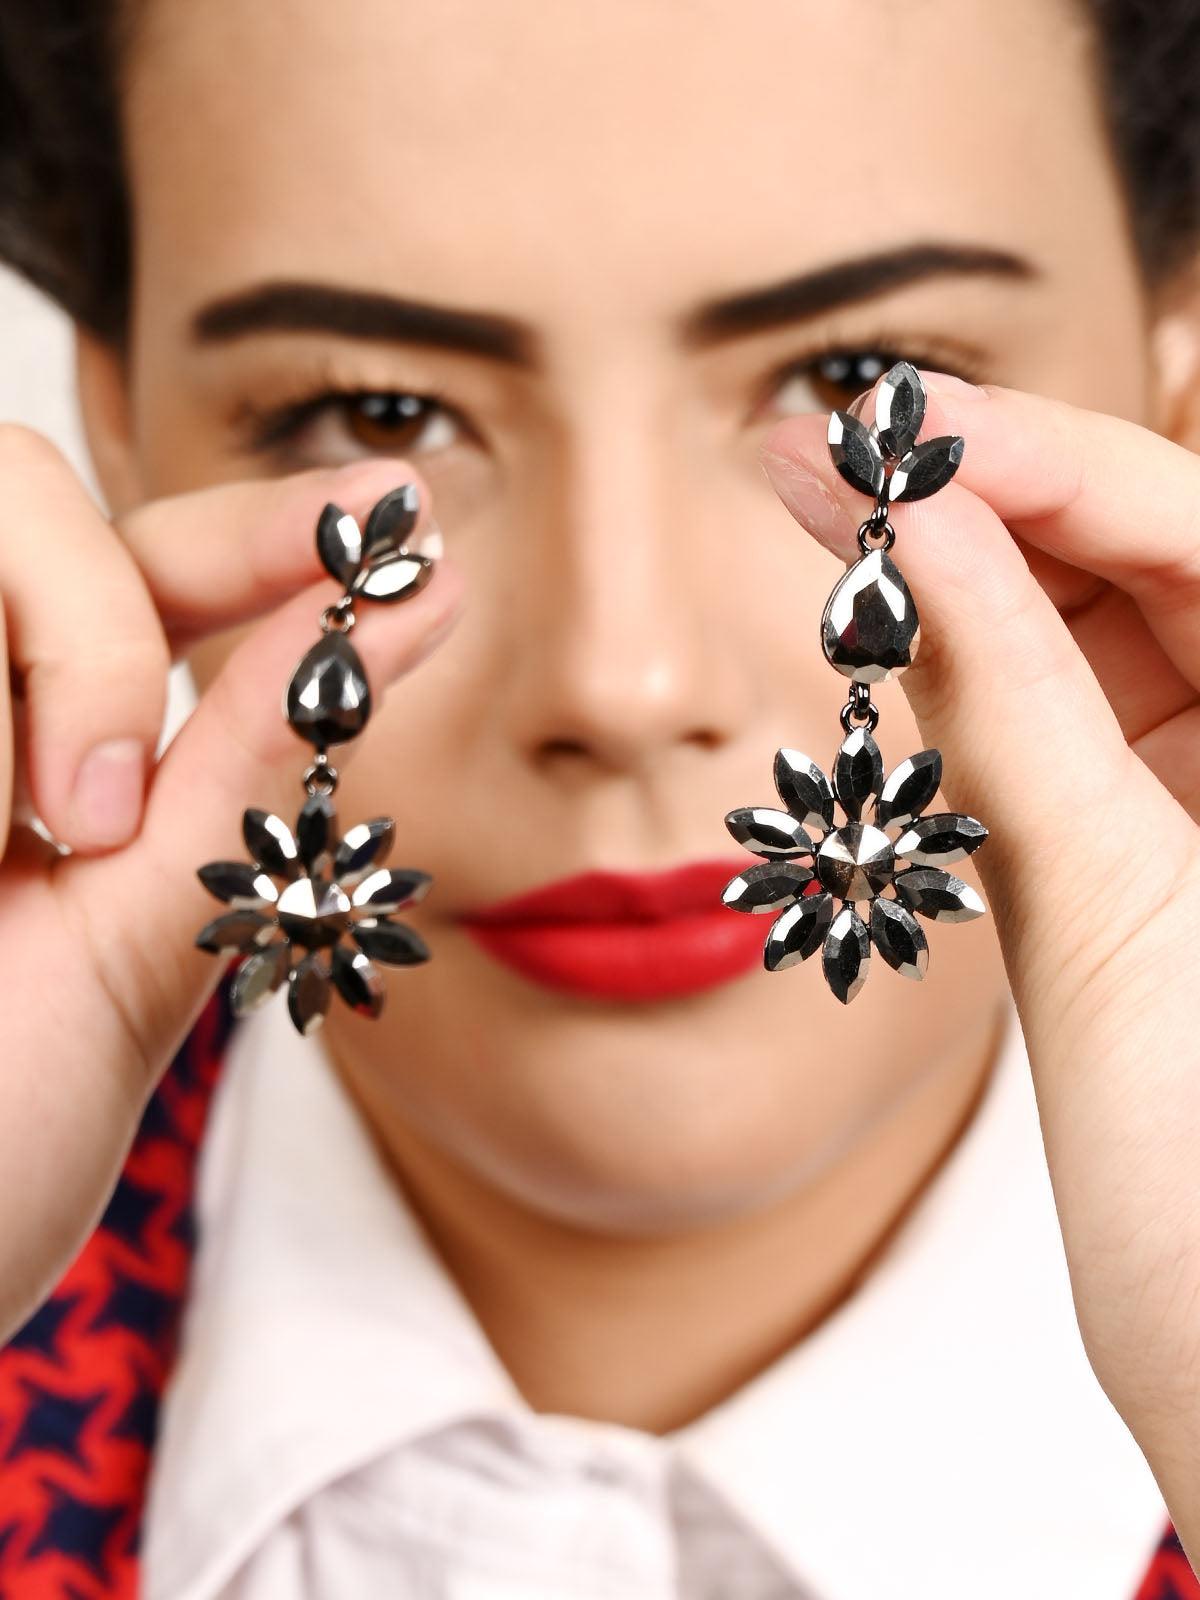 Silver Floral Crystal Drop Earrings - Odette